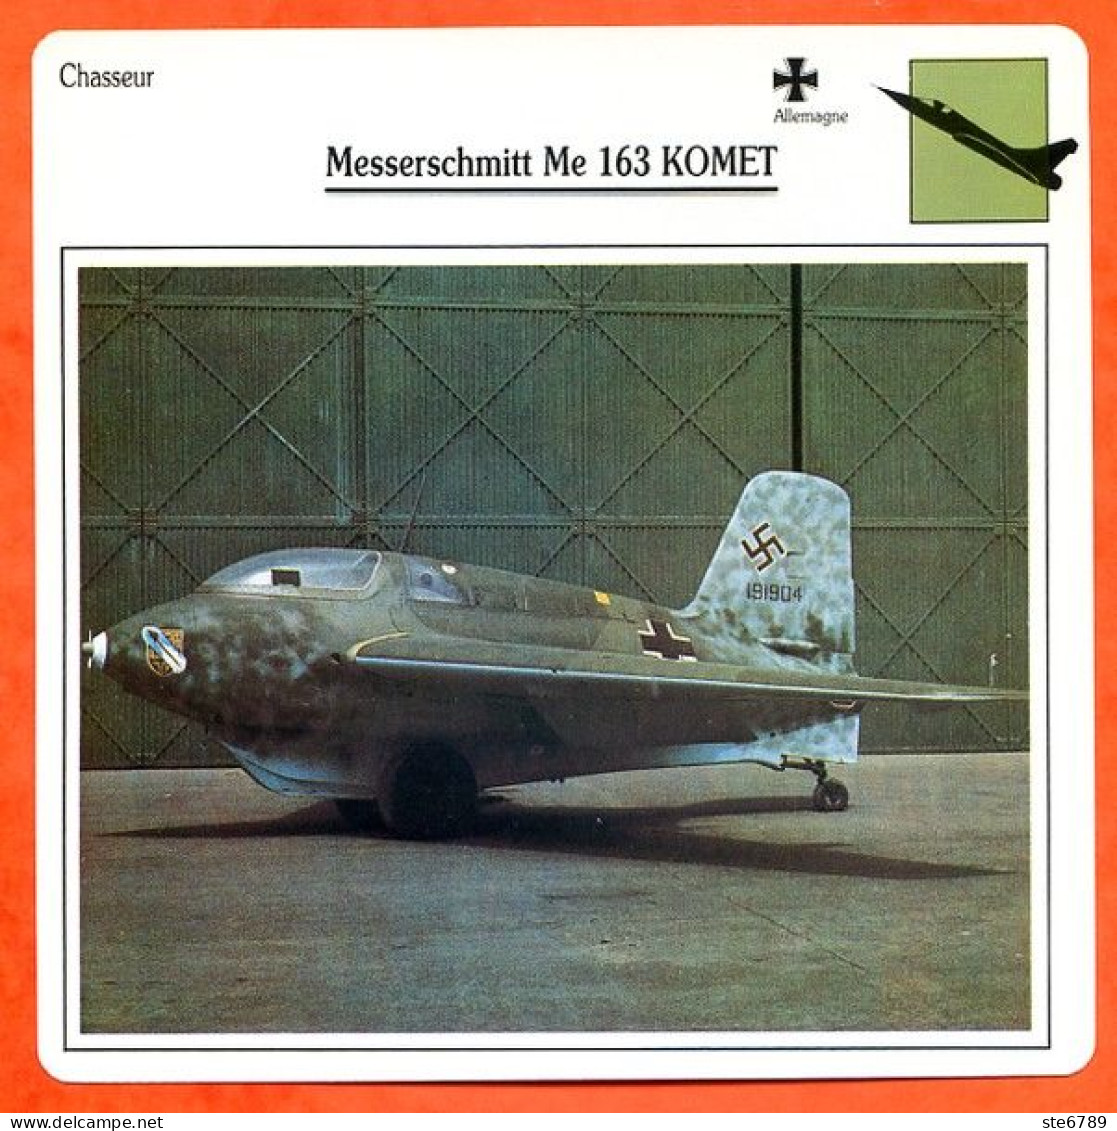 Fiche Aviation Messerschmitt Me 163 KOMET  / Avion De Chasse Chasseur  Allemagne  Avions  Ste6789 - Avions